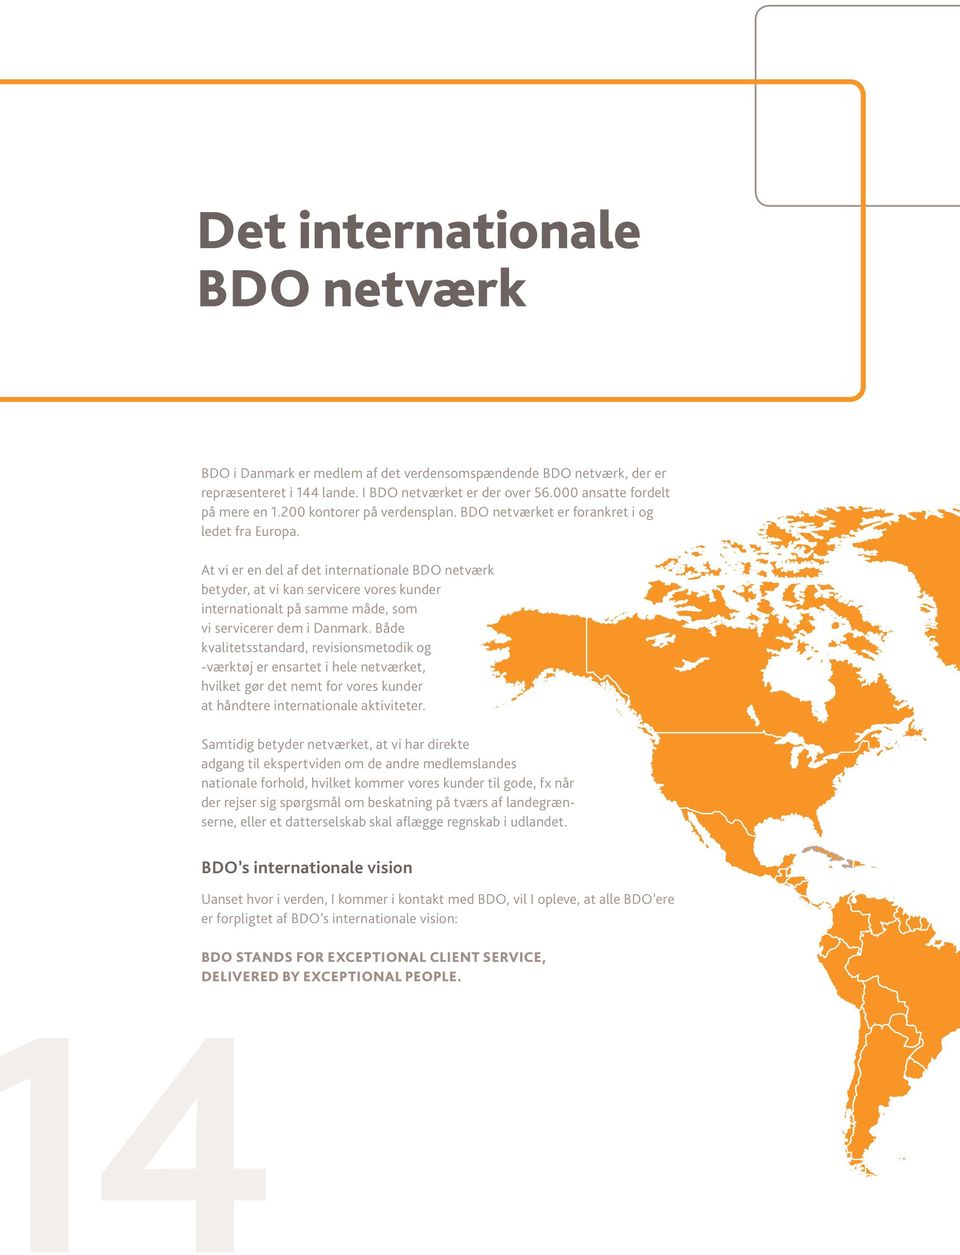 At vi er en del af det internationale BDO netværk betyder, at vi kan servicere vores kunder internationalt på samme måde, som vi servicerer dem i Danmark.